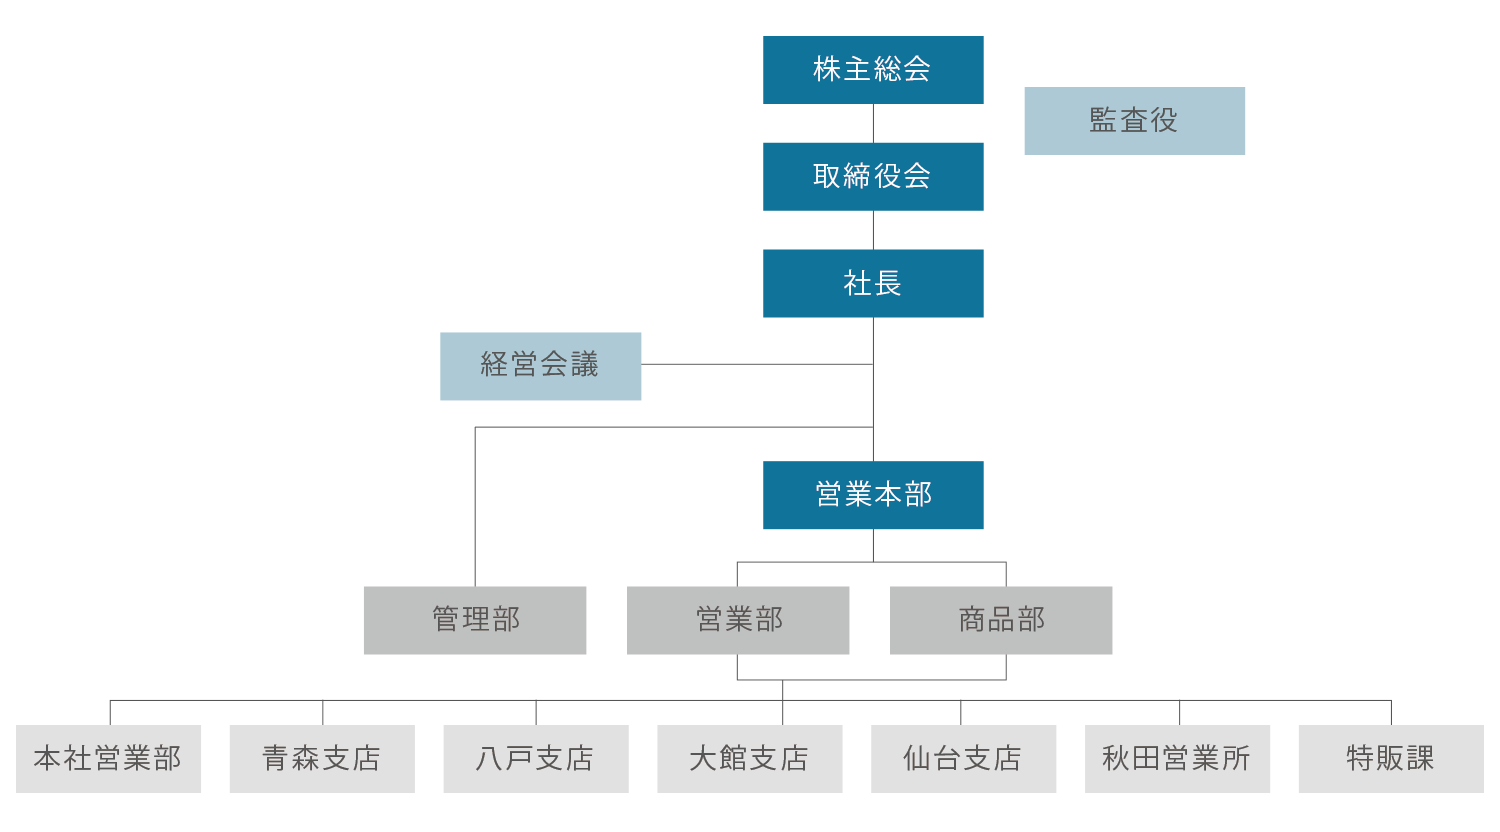 藤村機器株式会社 組織図